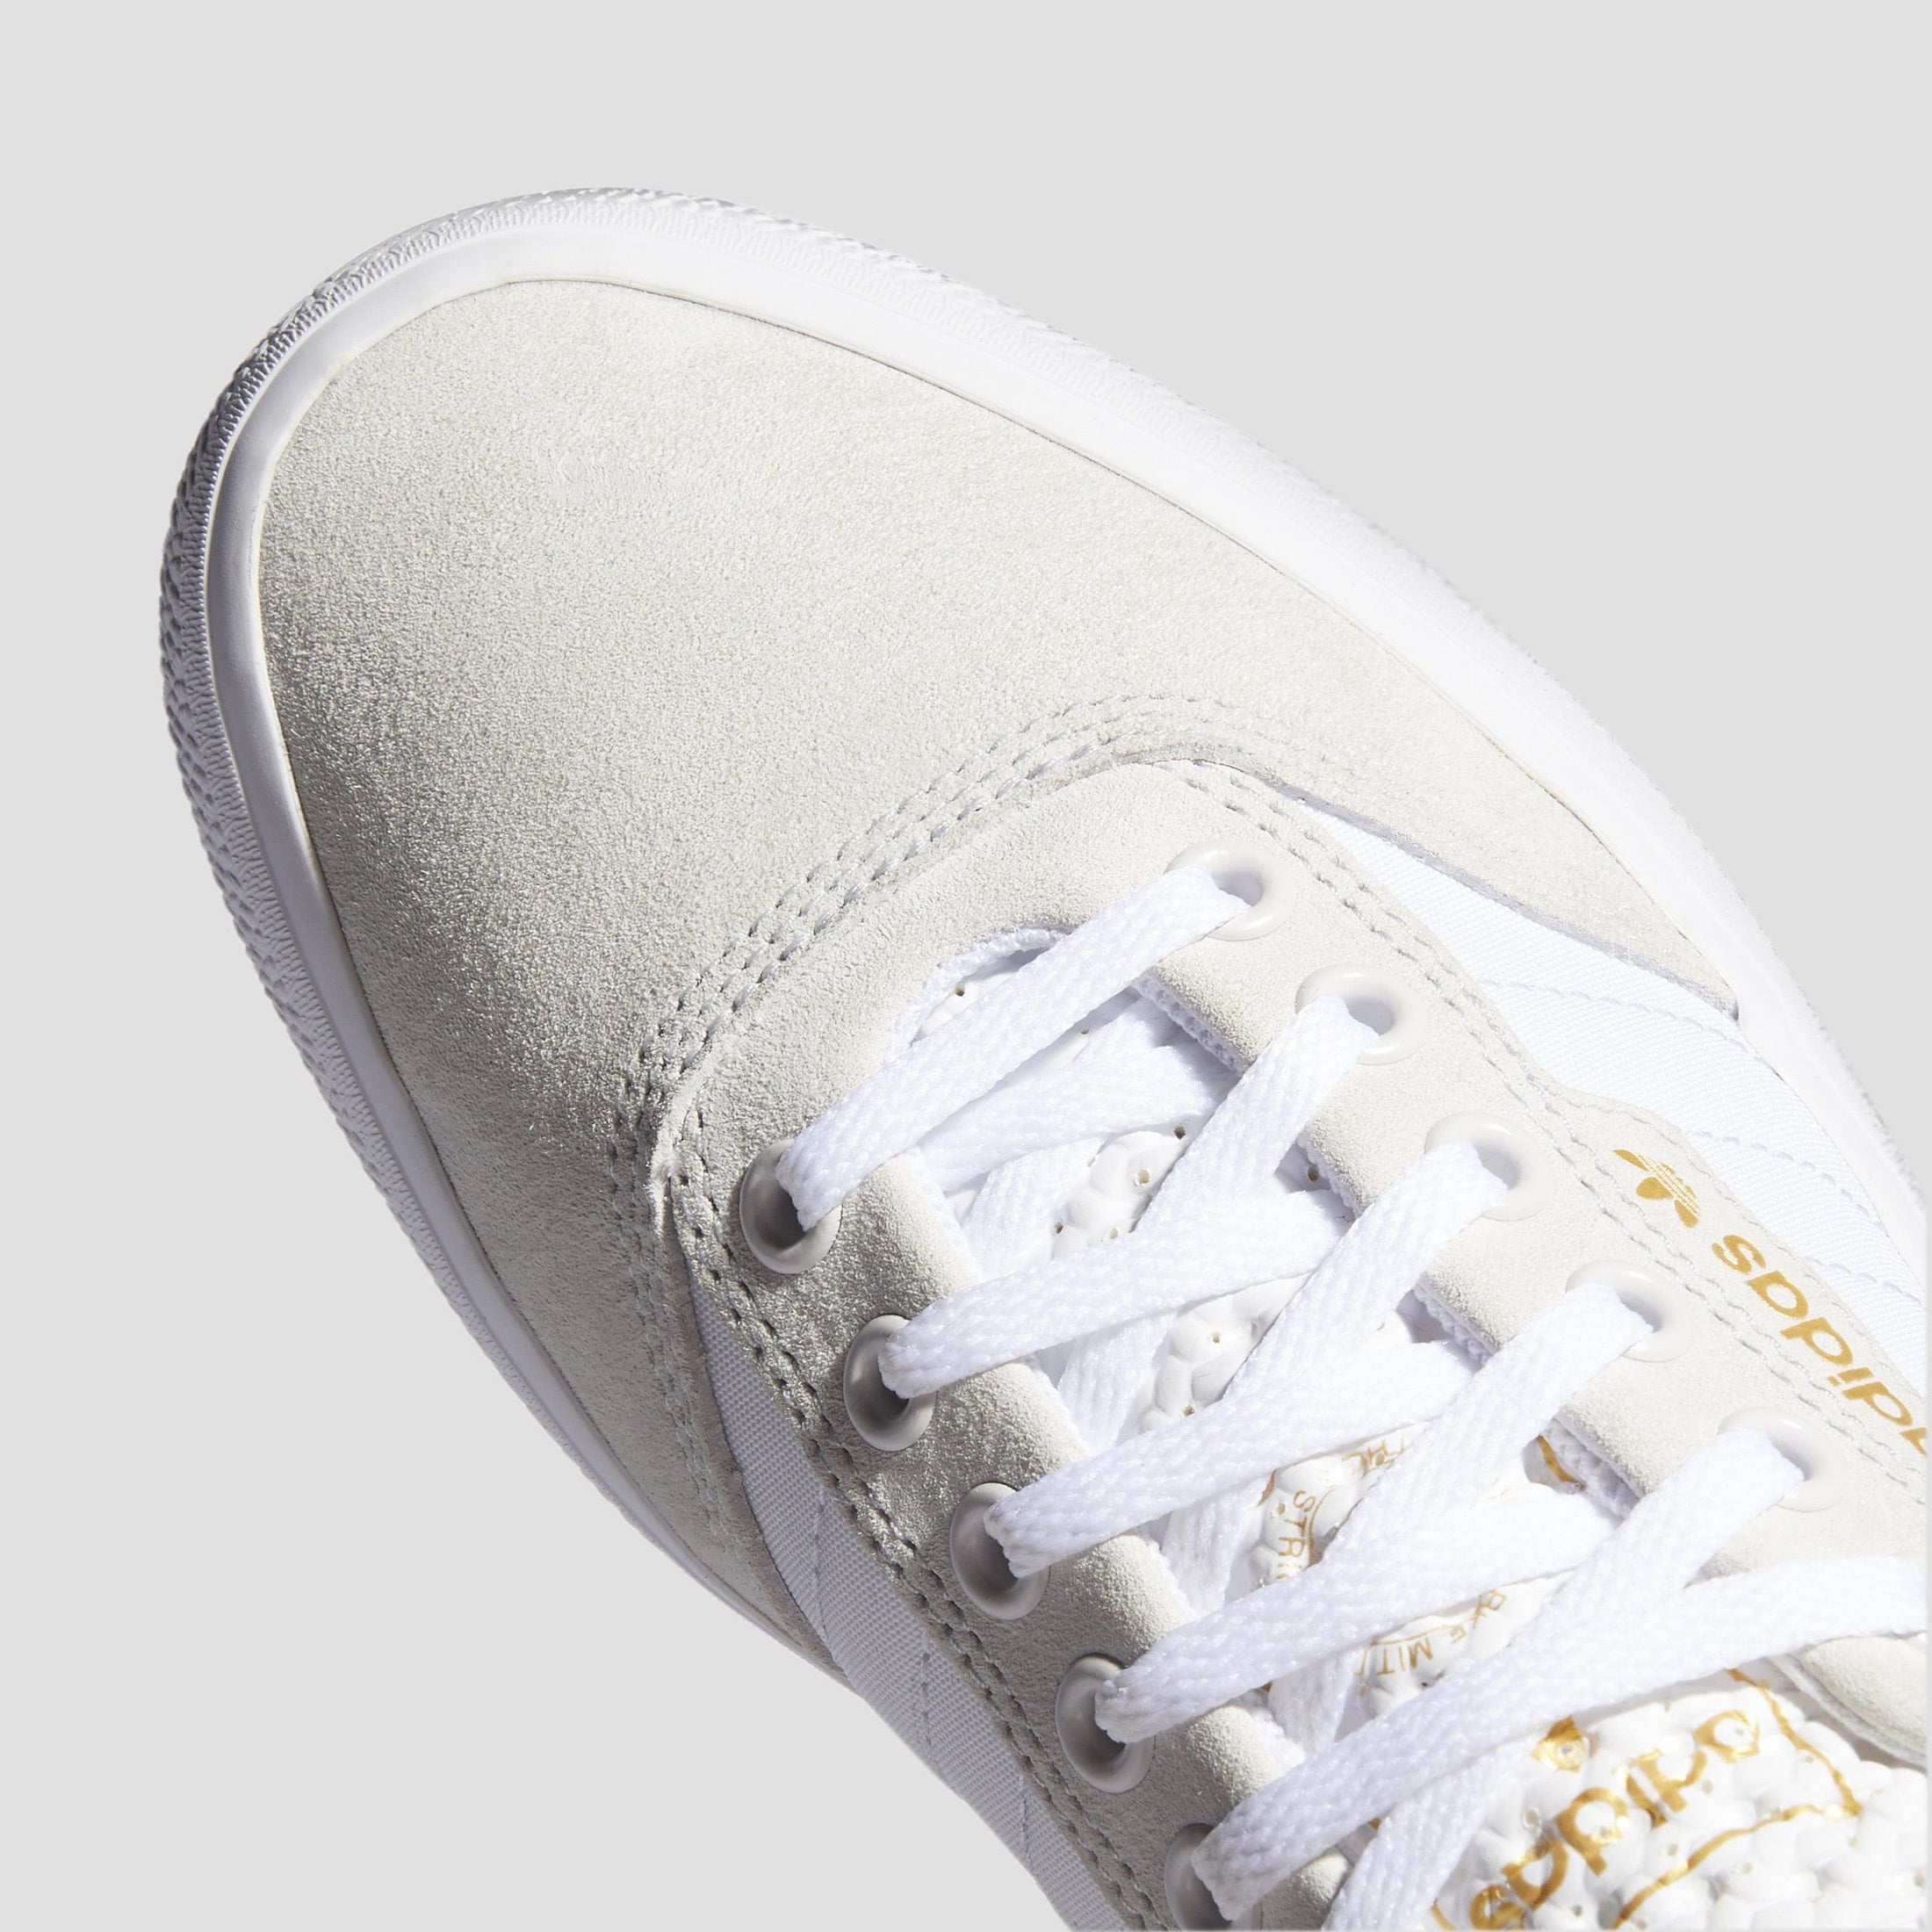 adidas 3MC Skate Shoes Crystal White / Footwear White / Gold Metallic